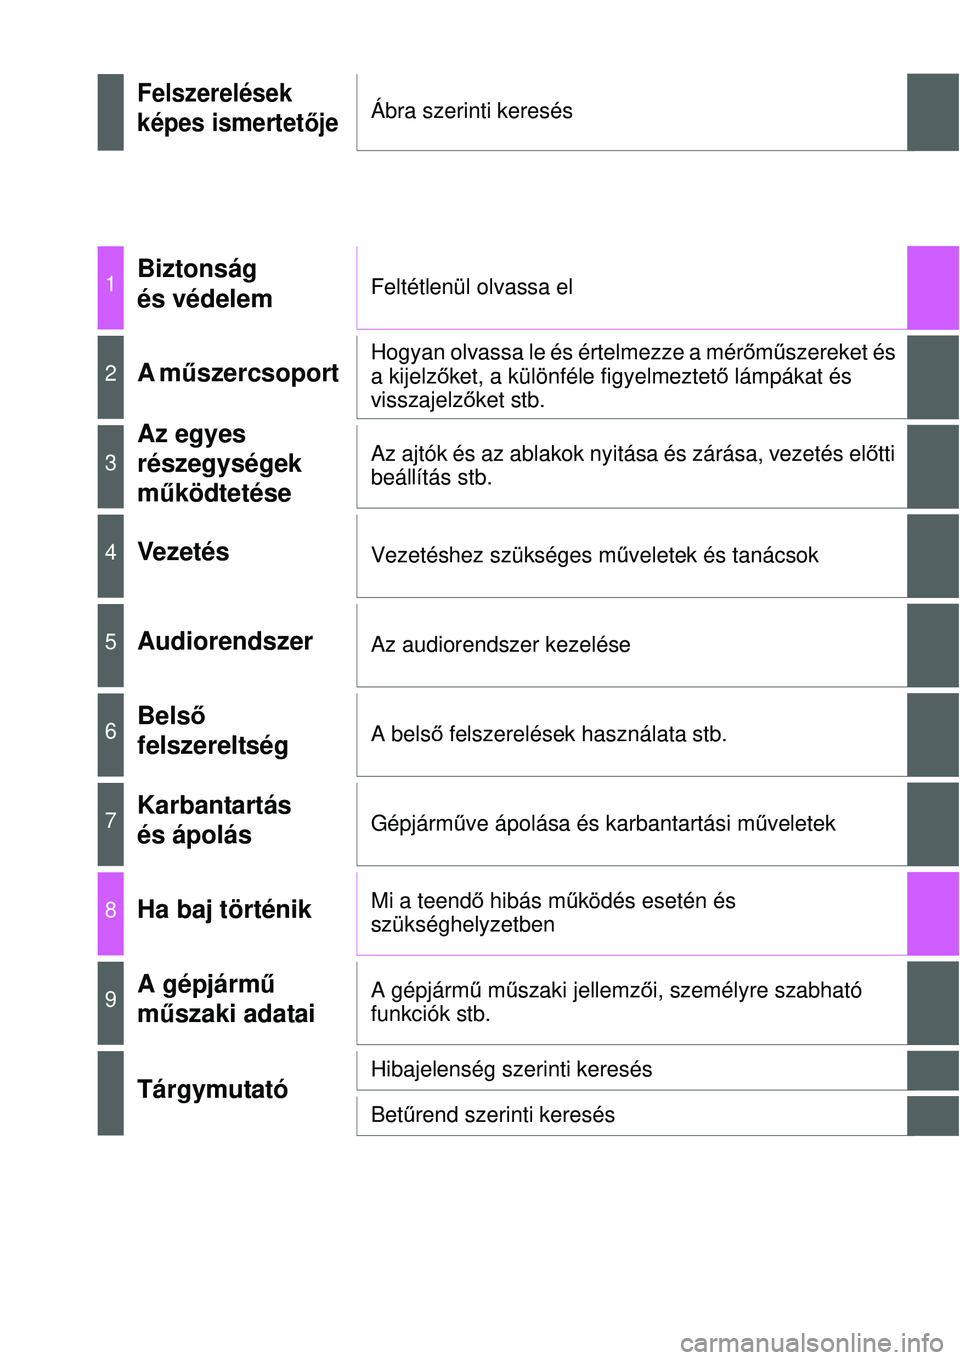 TOYOTA YARIS 2014  Kezelési útmutató (in Hungarian) Felszerelések
képes ismertetőjeÁbra szerinti keresés
1Biztonság 
és védelemFeltétlenül olvassa el
2A műszercsoport Hogyan olvassa le és értelmezze a mérőműszereket és 
a kijelzőket, 